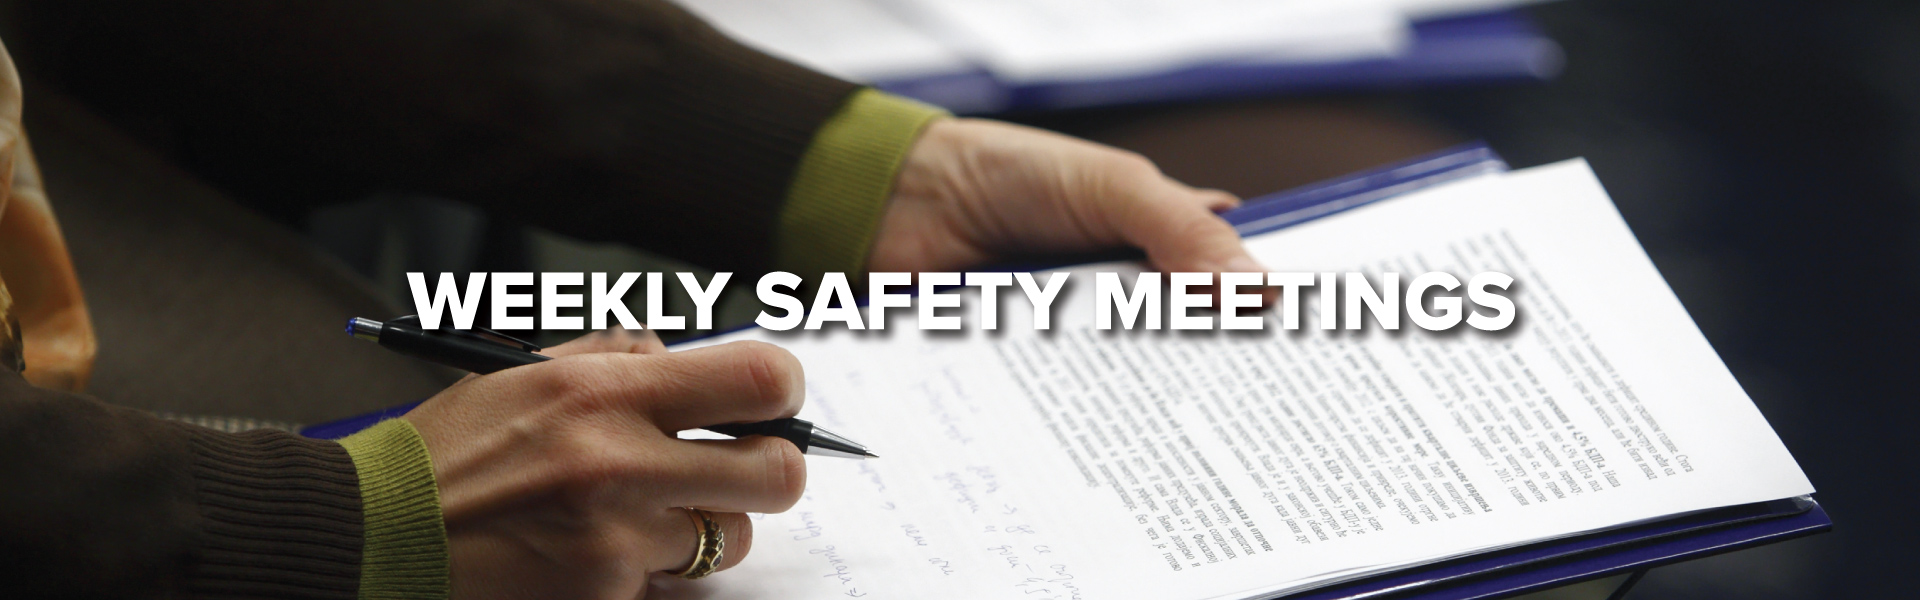 Weekly-Safety-Meetings-Header_1920x600